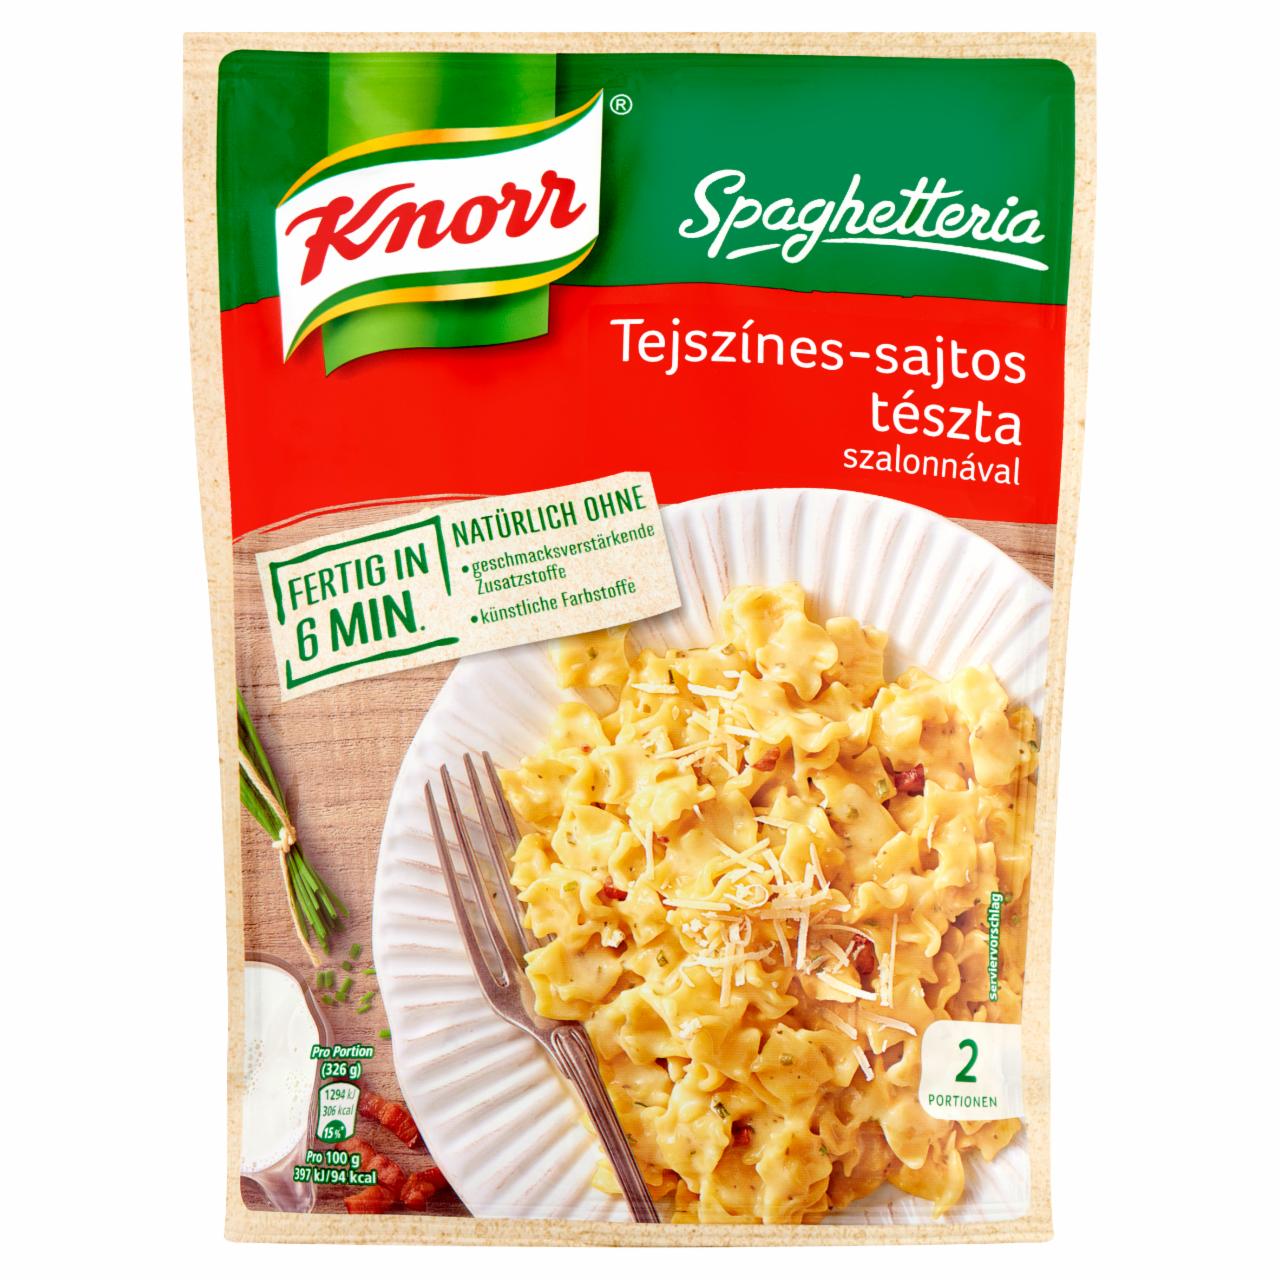 Képek - Knorr Spaghetteria tejszínes-sajtos tészta szalonnával 153 g